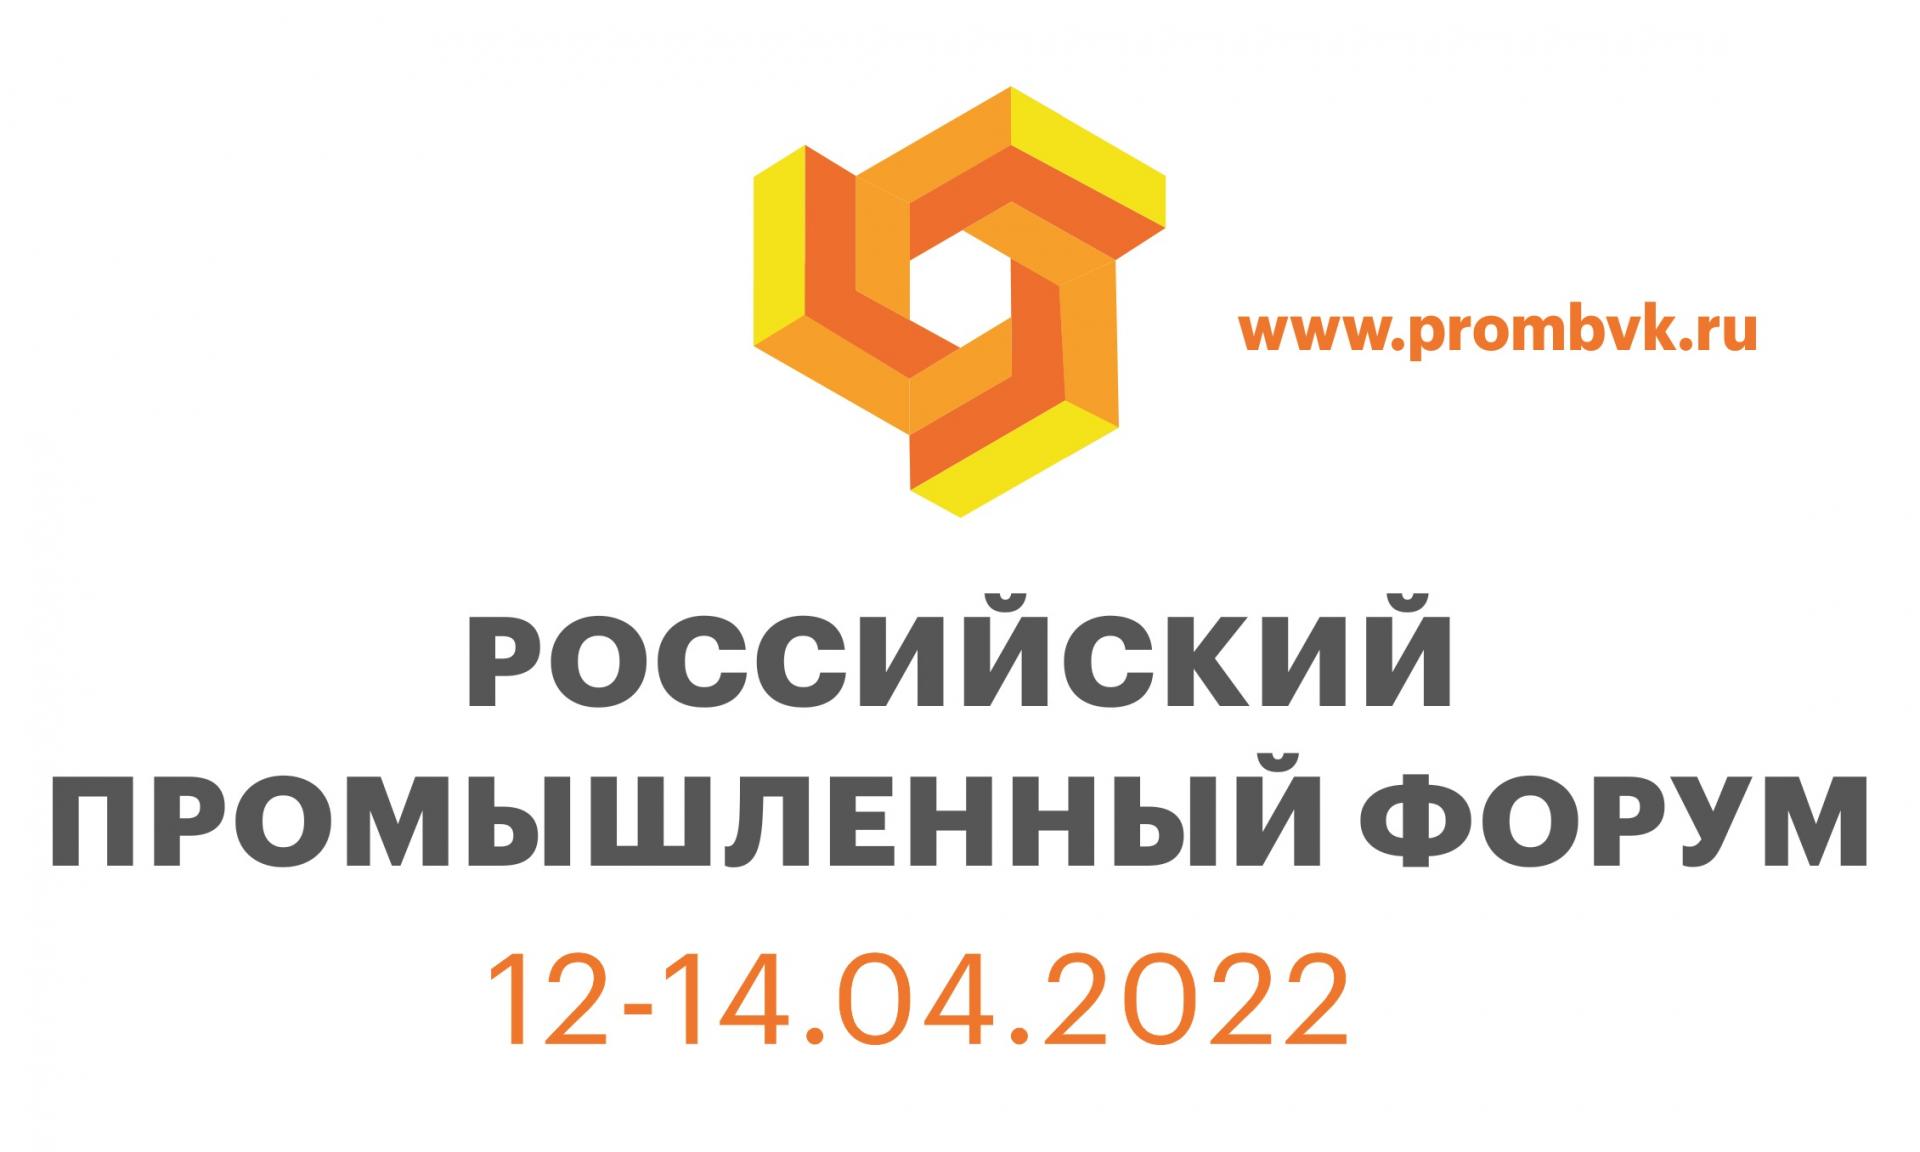 Российский промышленный форум состоится в апреле 2022 года
